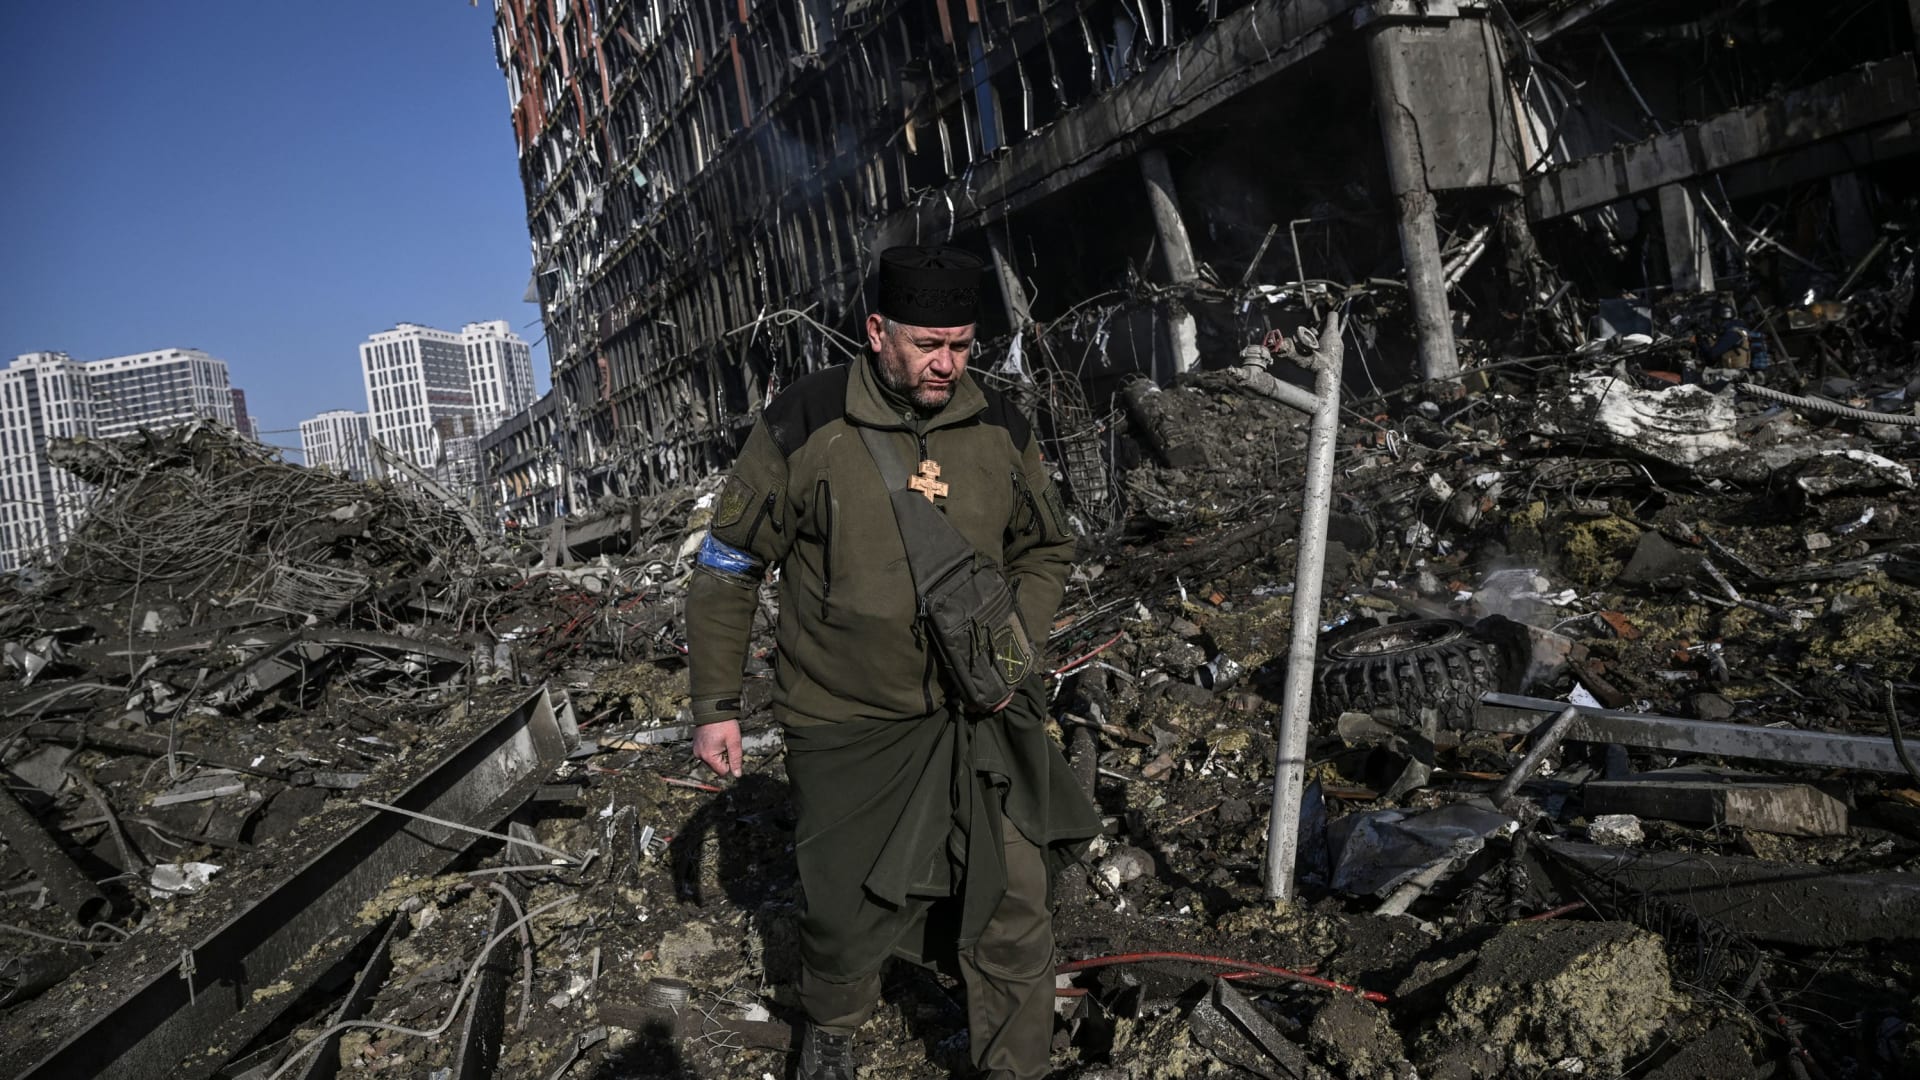 فيديو يظهر لحظة انفجار ضخم في كييف.. شاهد آثاره